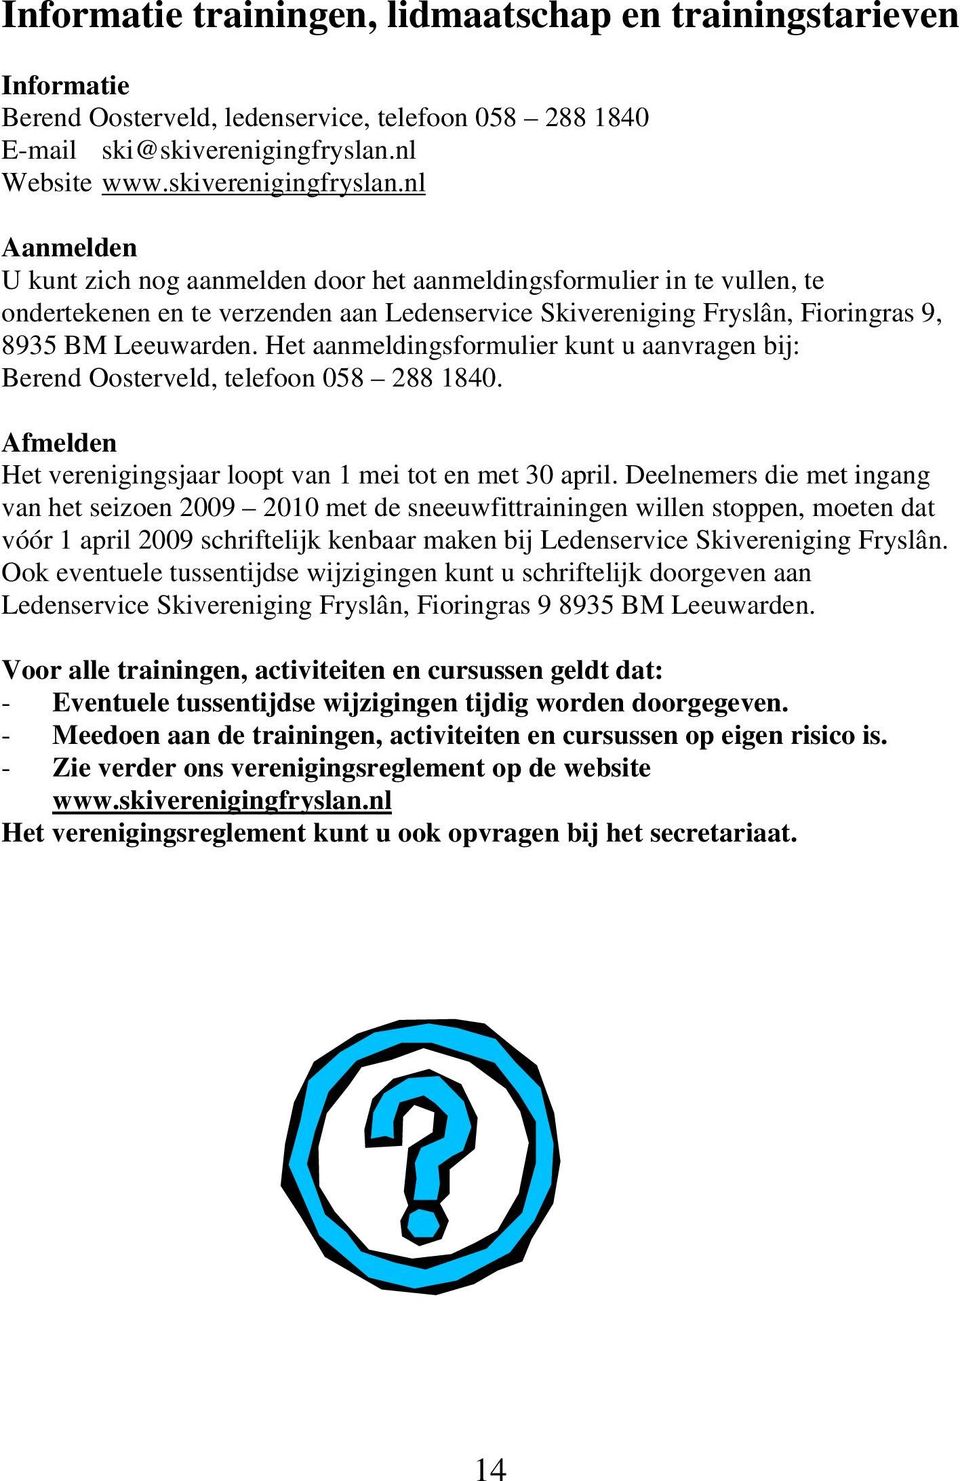 nl Aanmelden U kunt zich nog aanmelden door het aanmeldingsformulier in te vullen, te ondertekenen en te verzenden aan Ledenservice Skivereniging Fryslân, Fioringras 9, 8935 BM Leeuwarden.